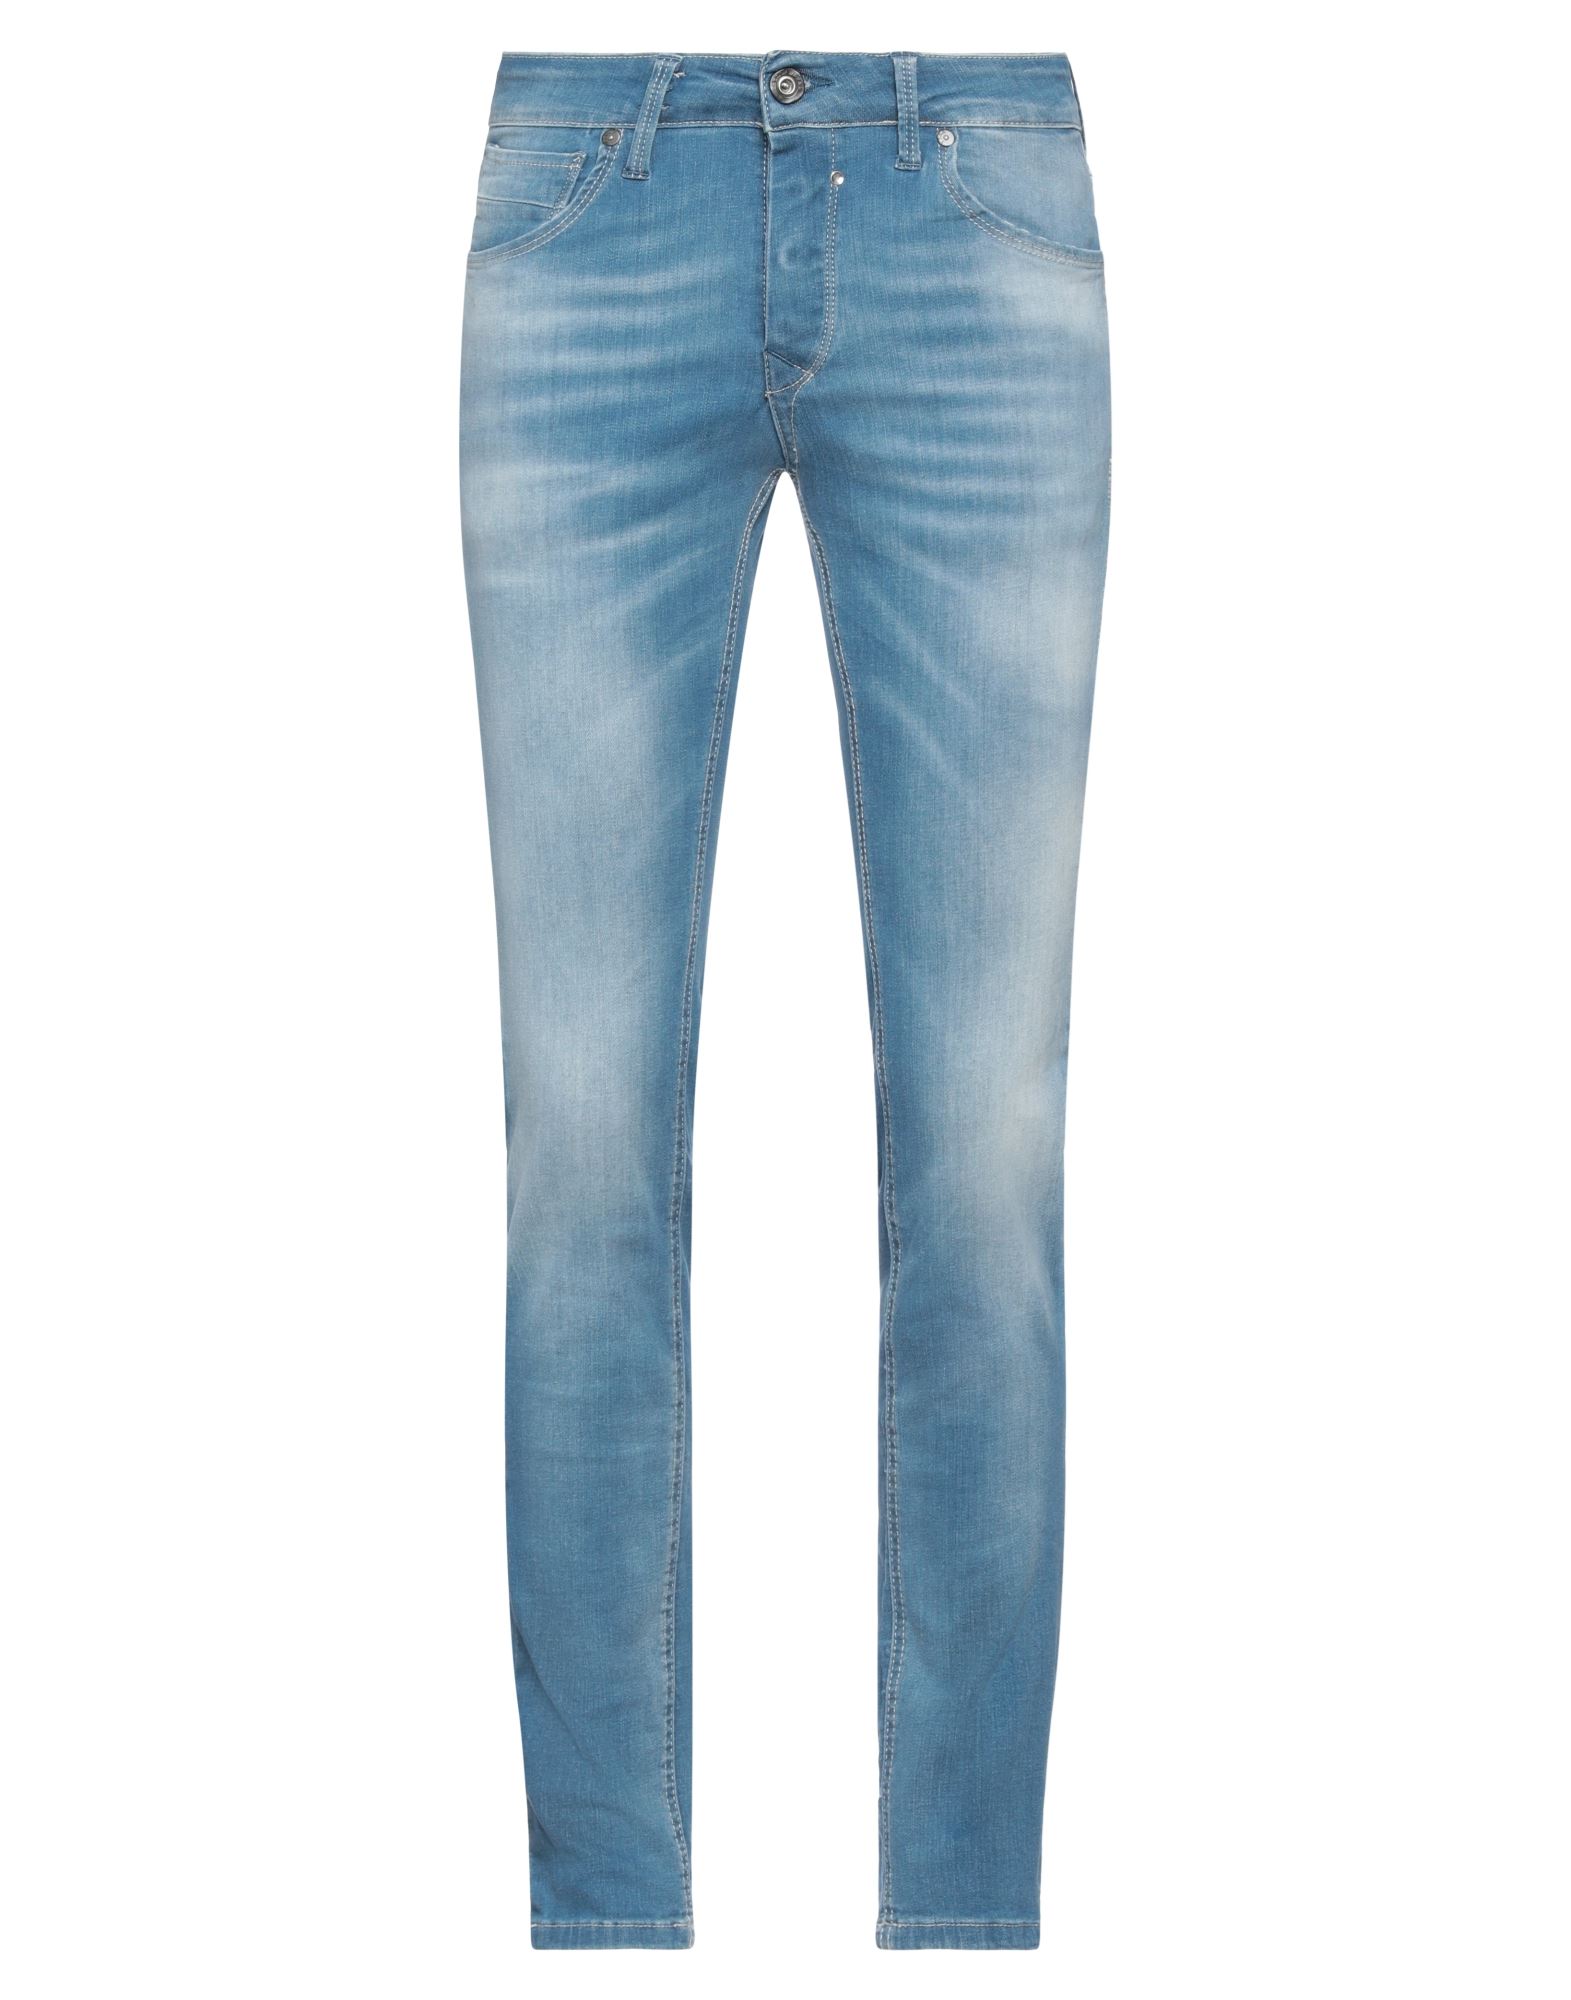 Jack & Jones Man Jeans Blue Size 34w-32l Cotton, Elastane